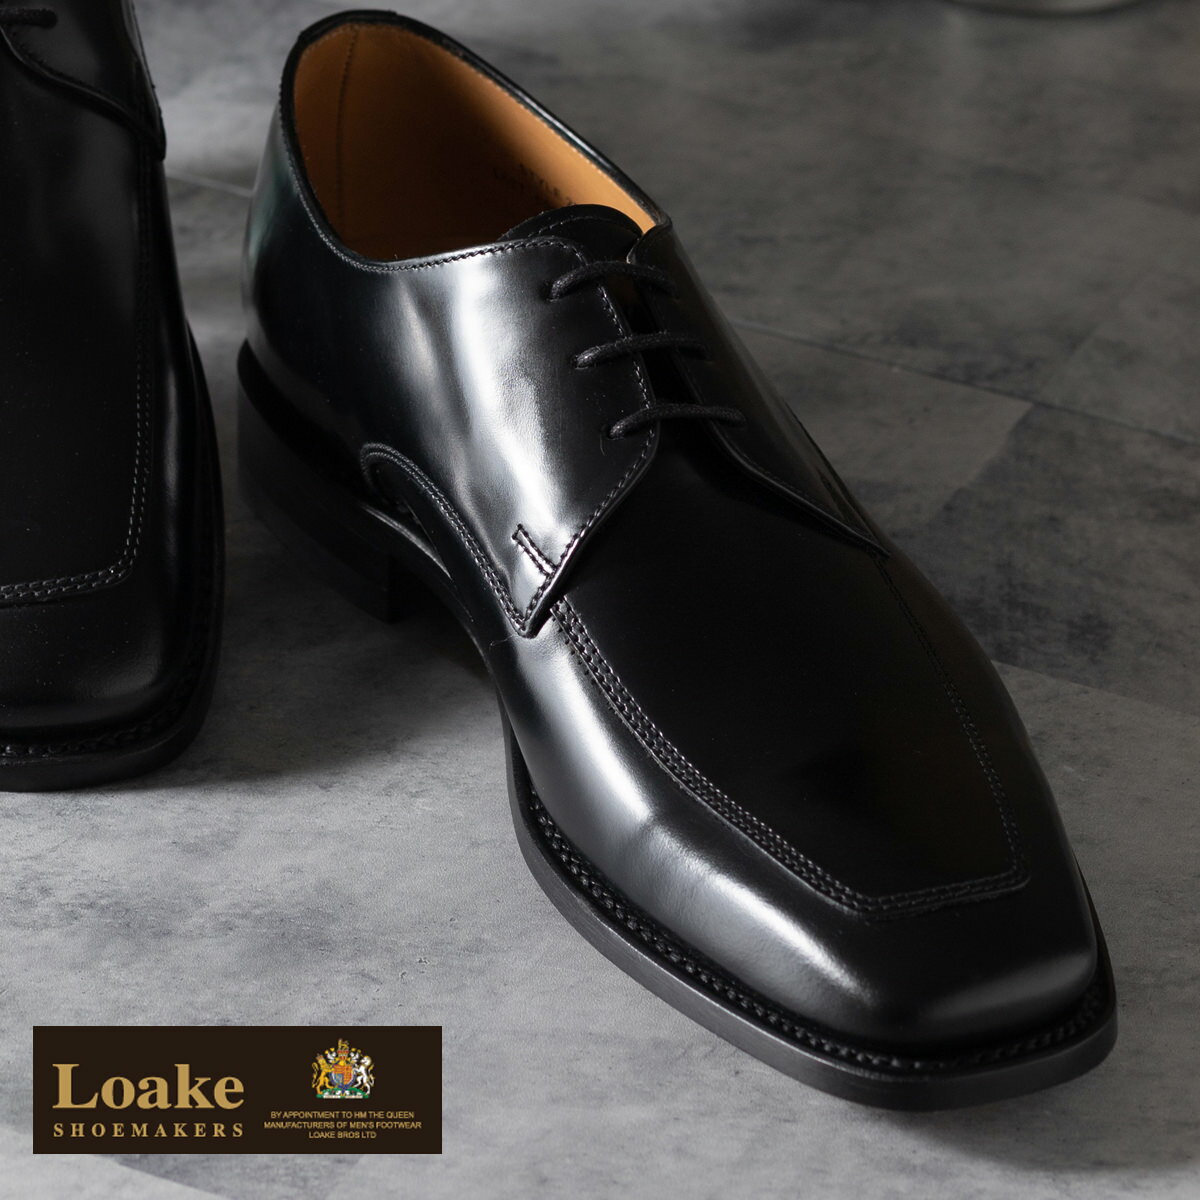 Loake England ローク 革靴 本革 メンズ L1 259 エプロンダービーシューズ ブラック Uチップ スクエアトゥ ドレスシューズ レザーシューズ 英国王室御用達 G 4E ビジネス カジュアル ギフト トラッド